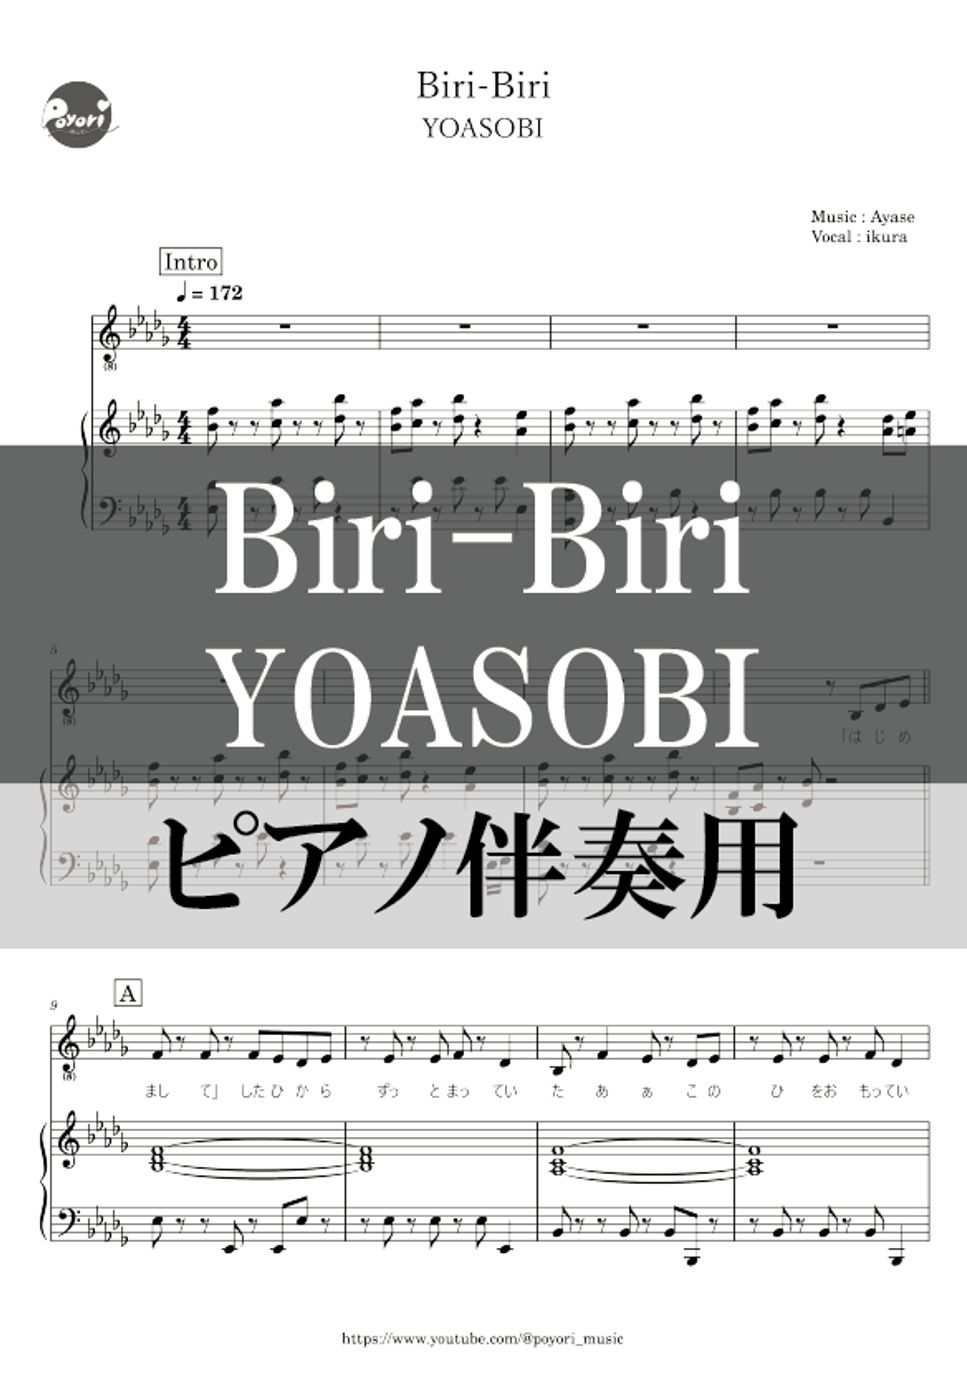 YOASOBI - Biri-Biri (ピアノ伴奏) by ぽより